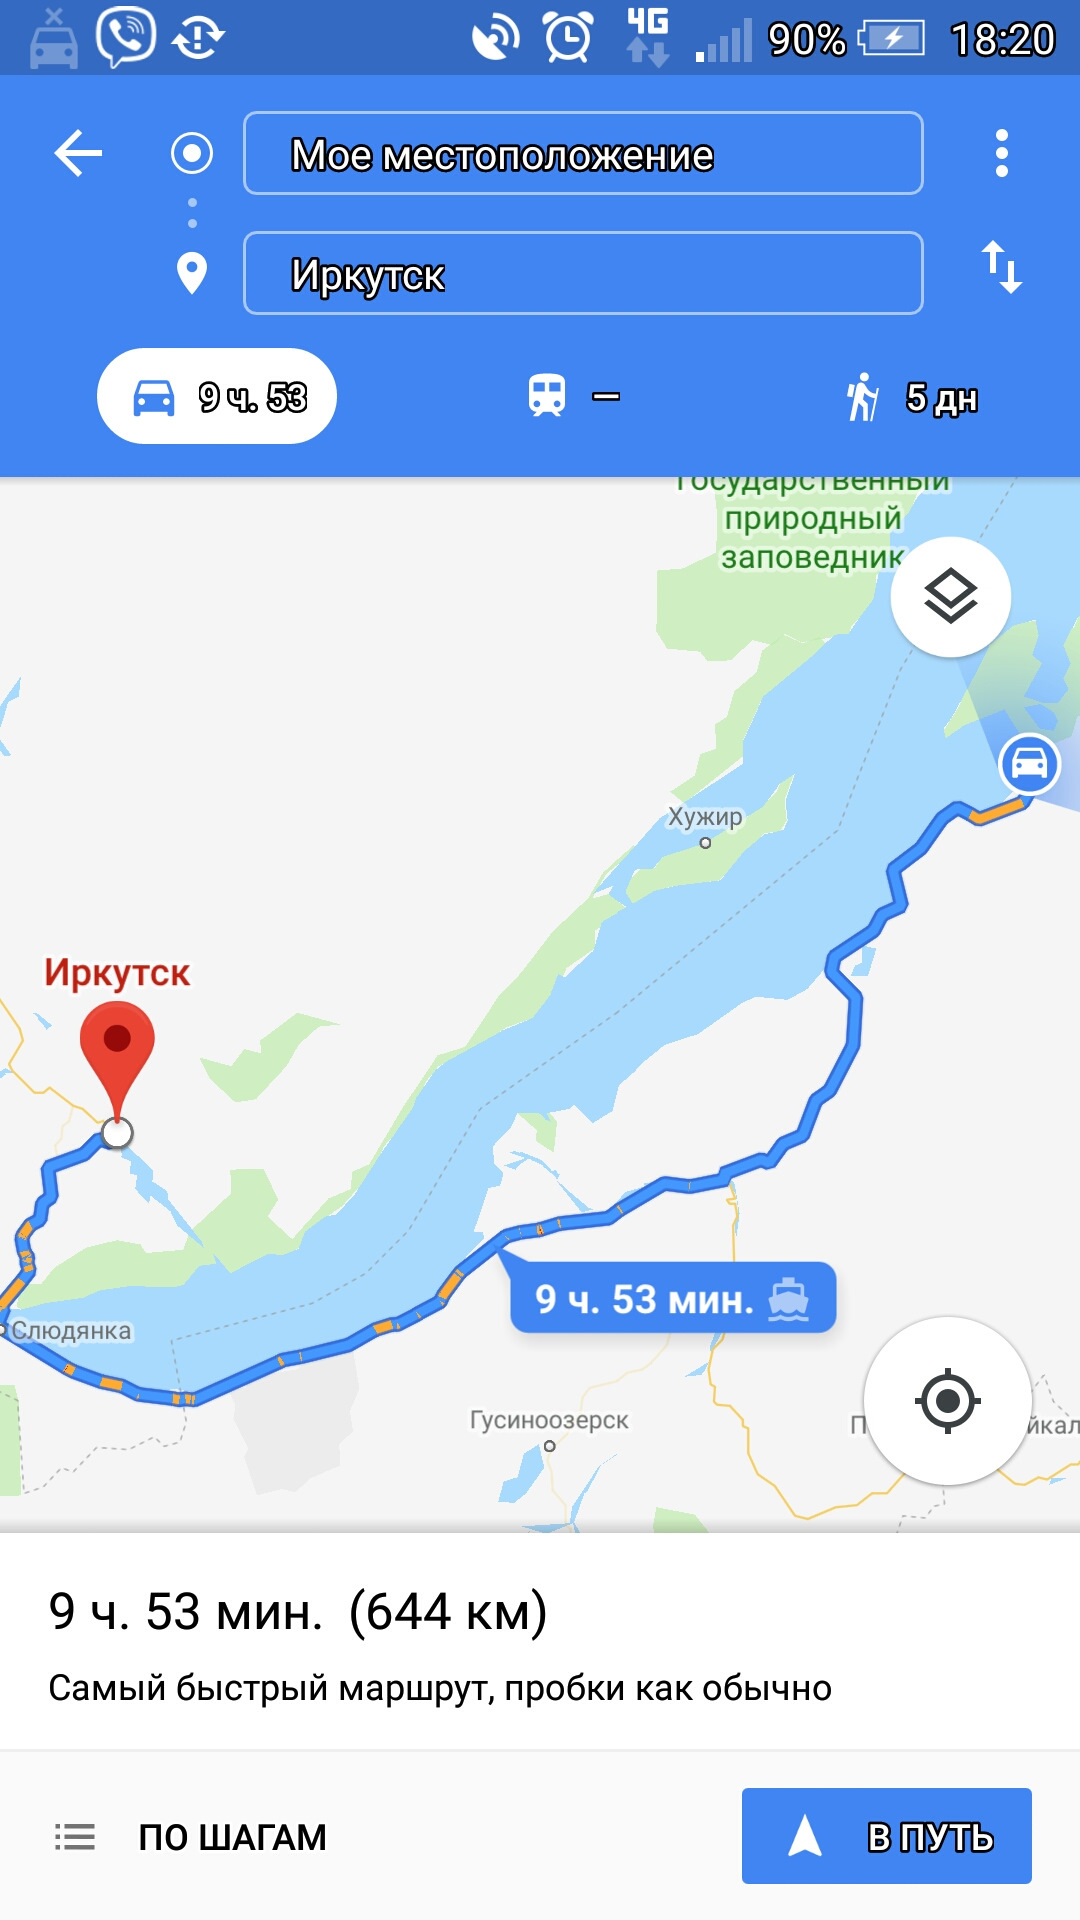 Иркутск местоположение. Геолокация Иркутск. Мое местоположение Иркутск. Усть-Баргузин Улан-Удэ.